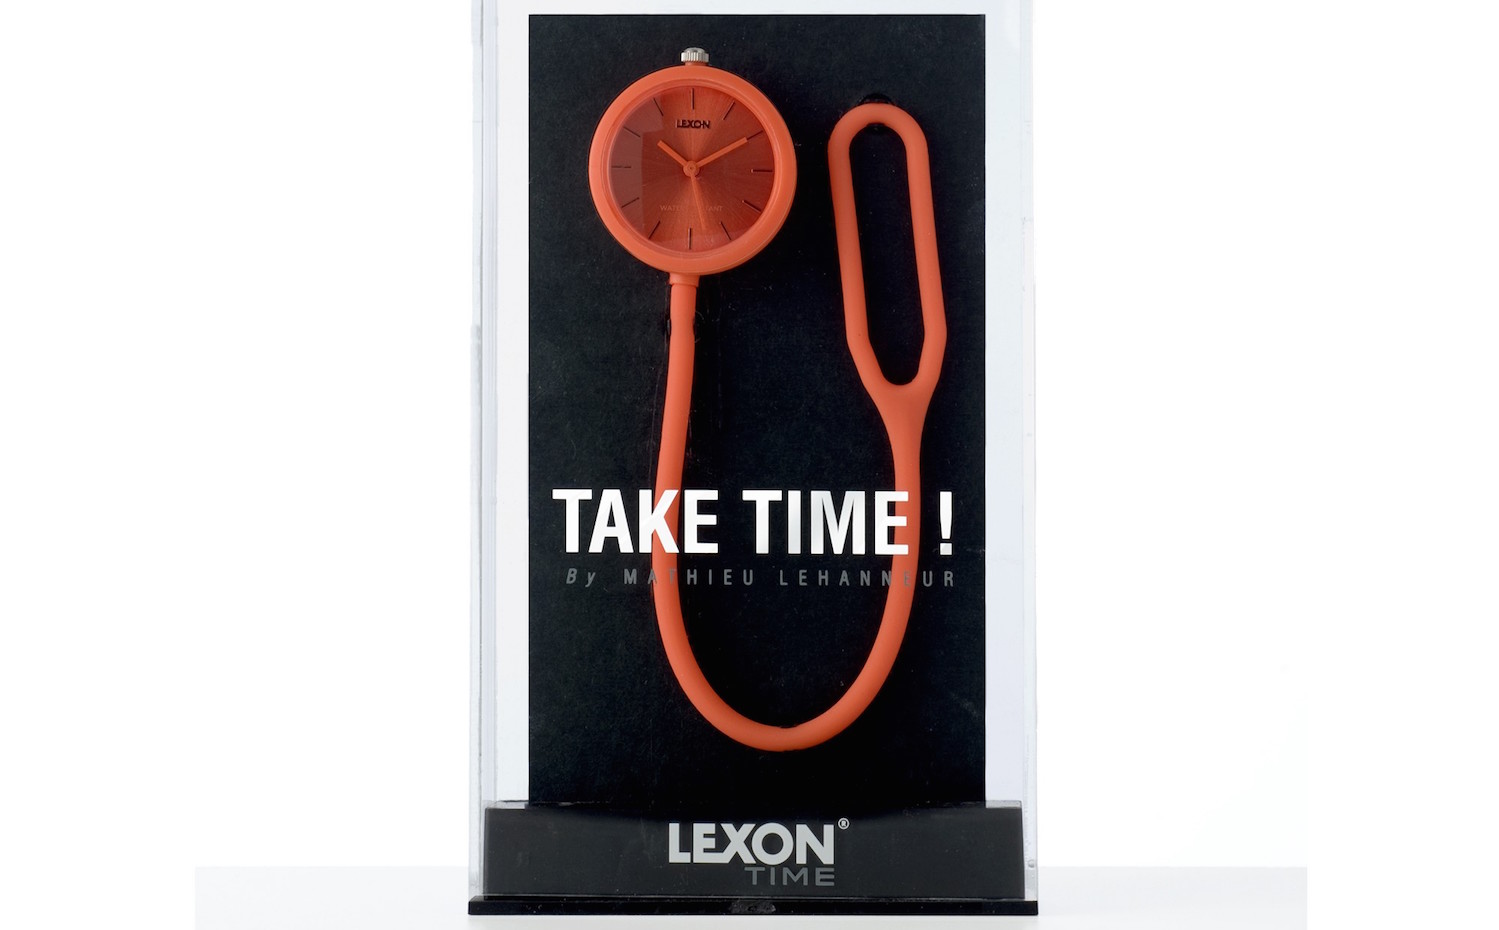 lm112box 6. Reloj de Lexon con correa flexible. Versátil: es reloj de pulsera, de bolsillo o se puede colocar en el manillar de la bicicleta